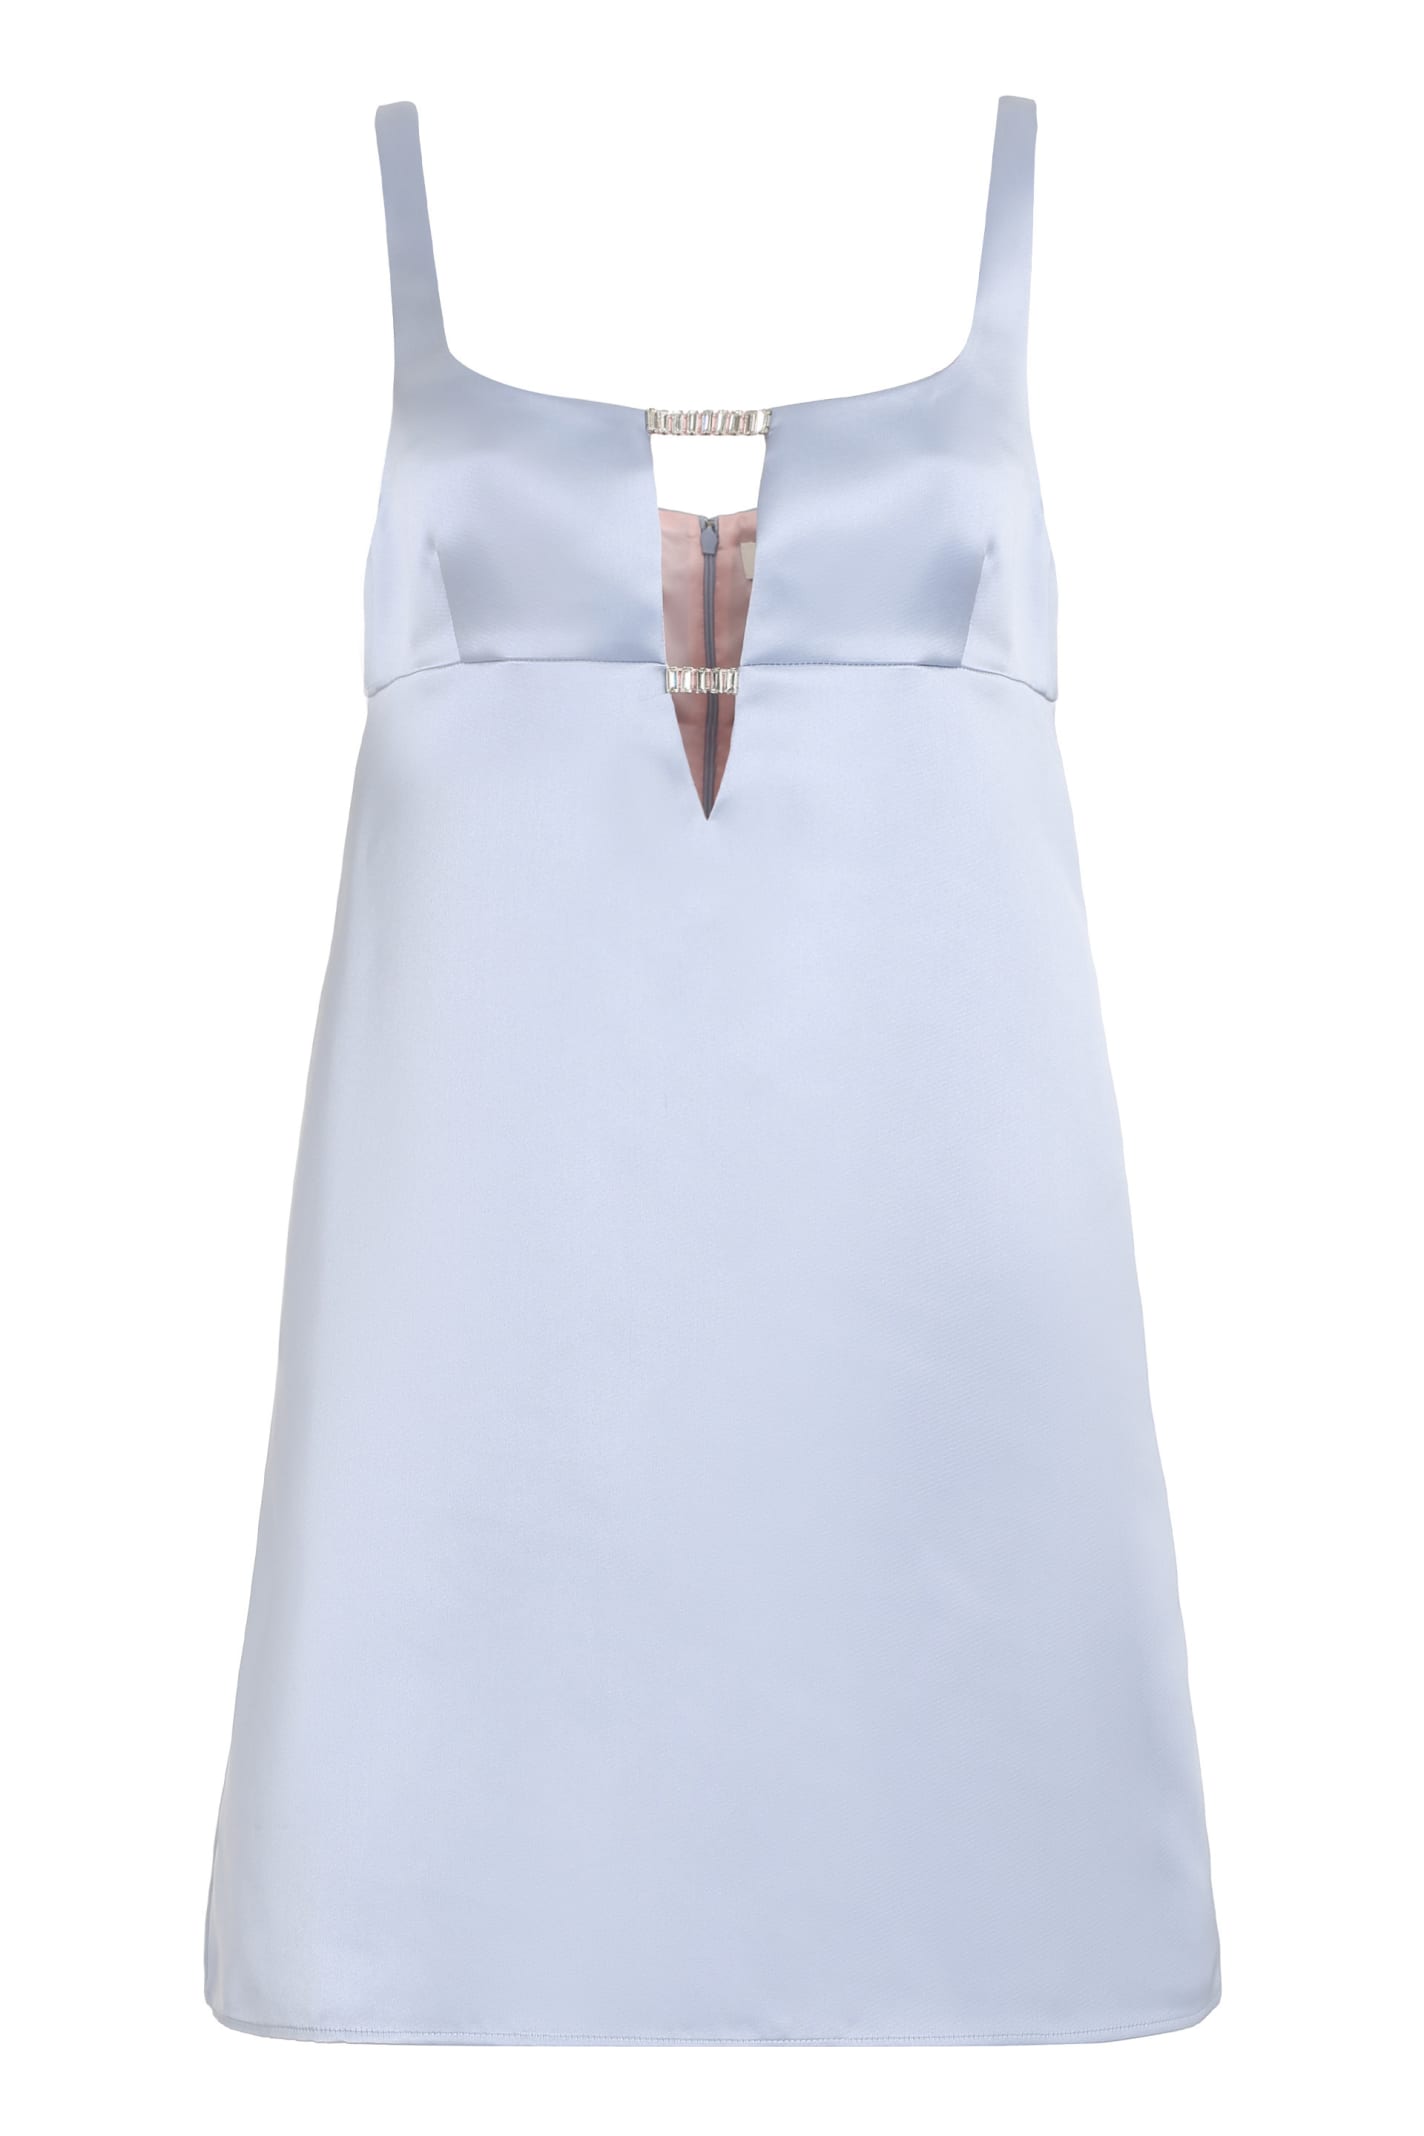 Shop Nina Ricci Satin Dress In Light Blue